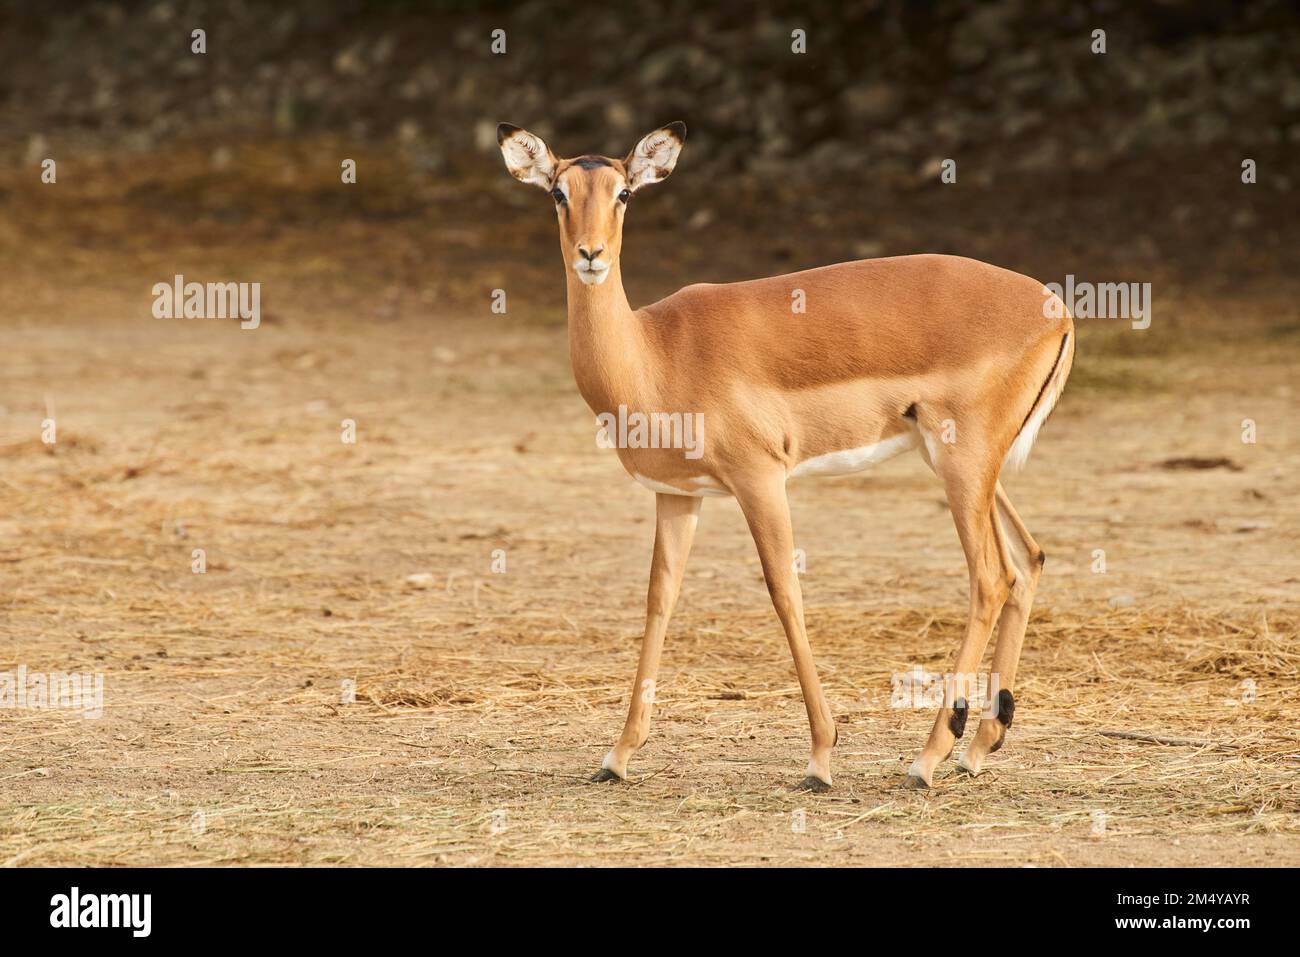 Weibliche Impala (Aepyceros melampus) im Dessert, Gefangenschaft, Distributionsafrika Stockfoto